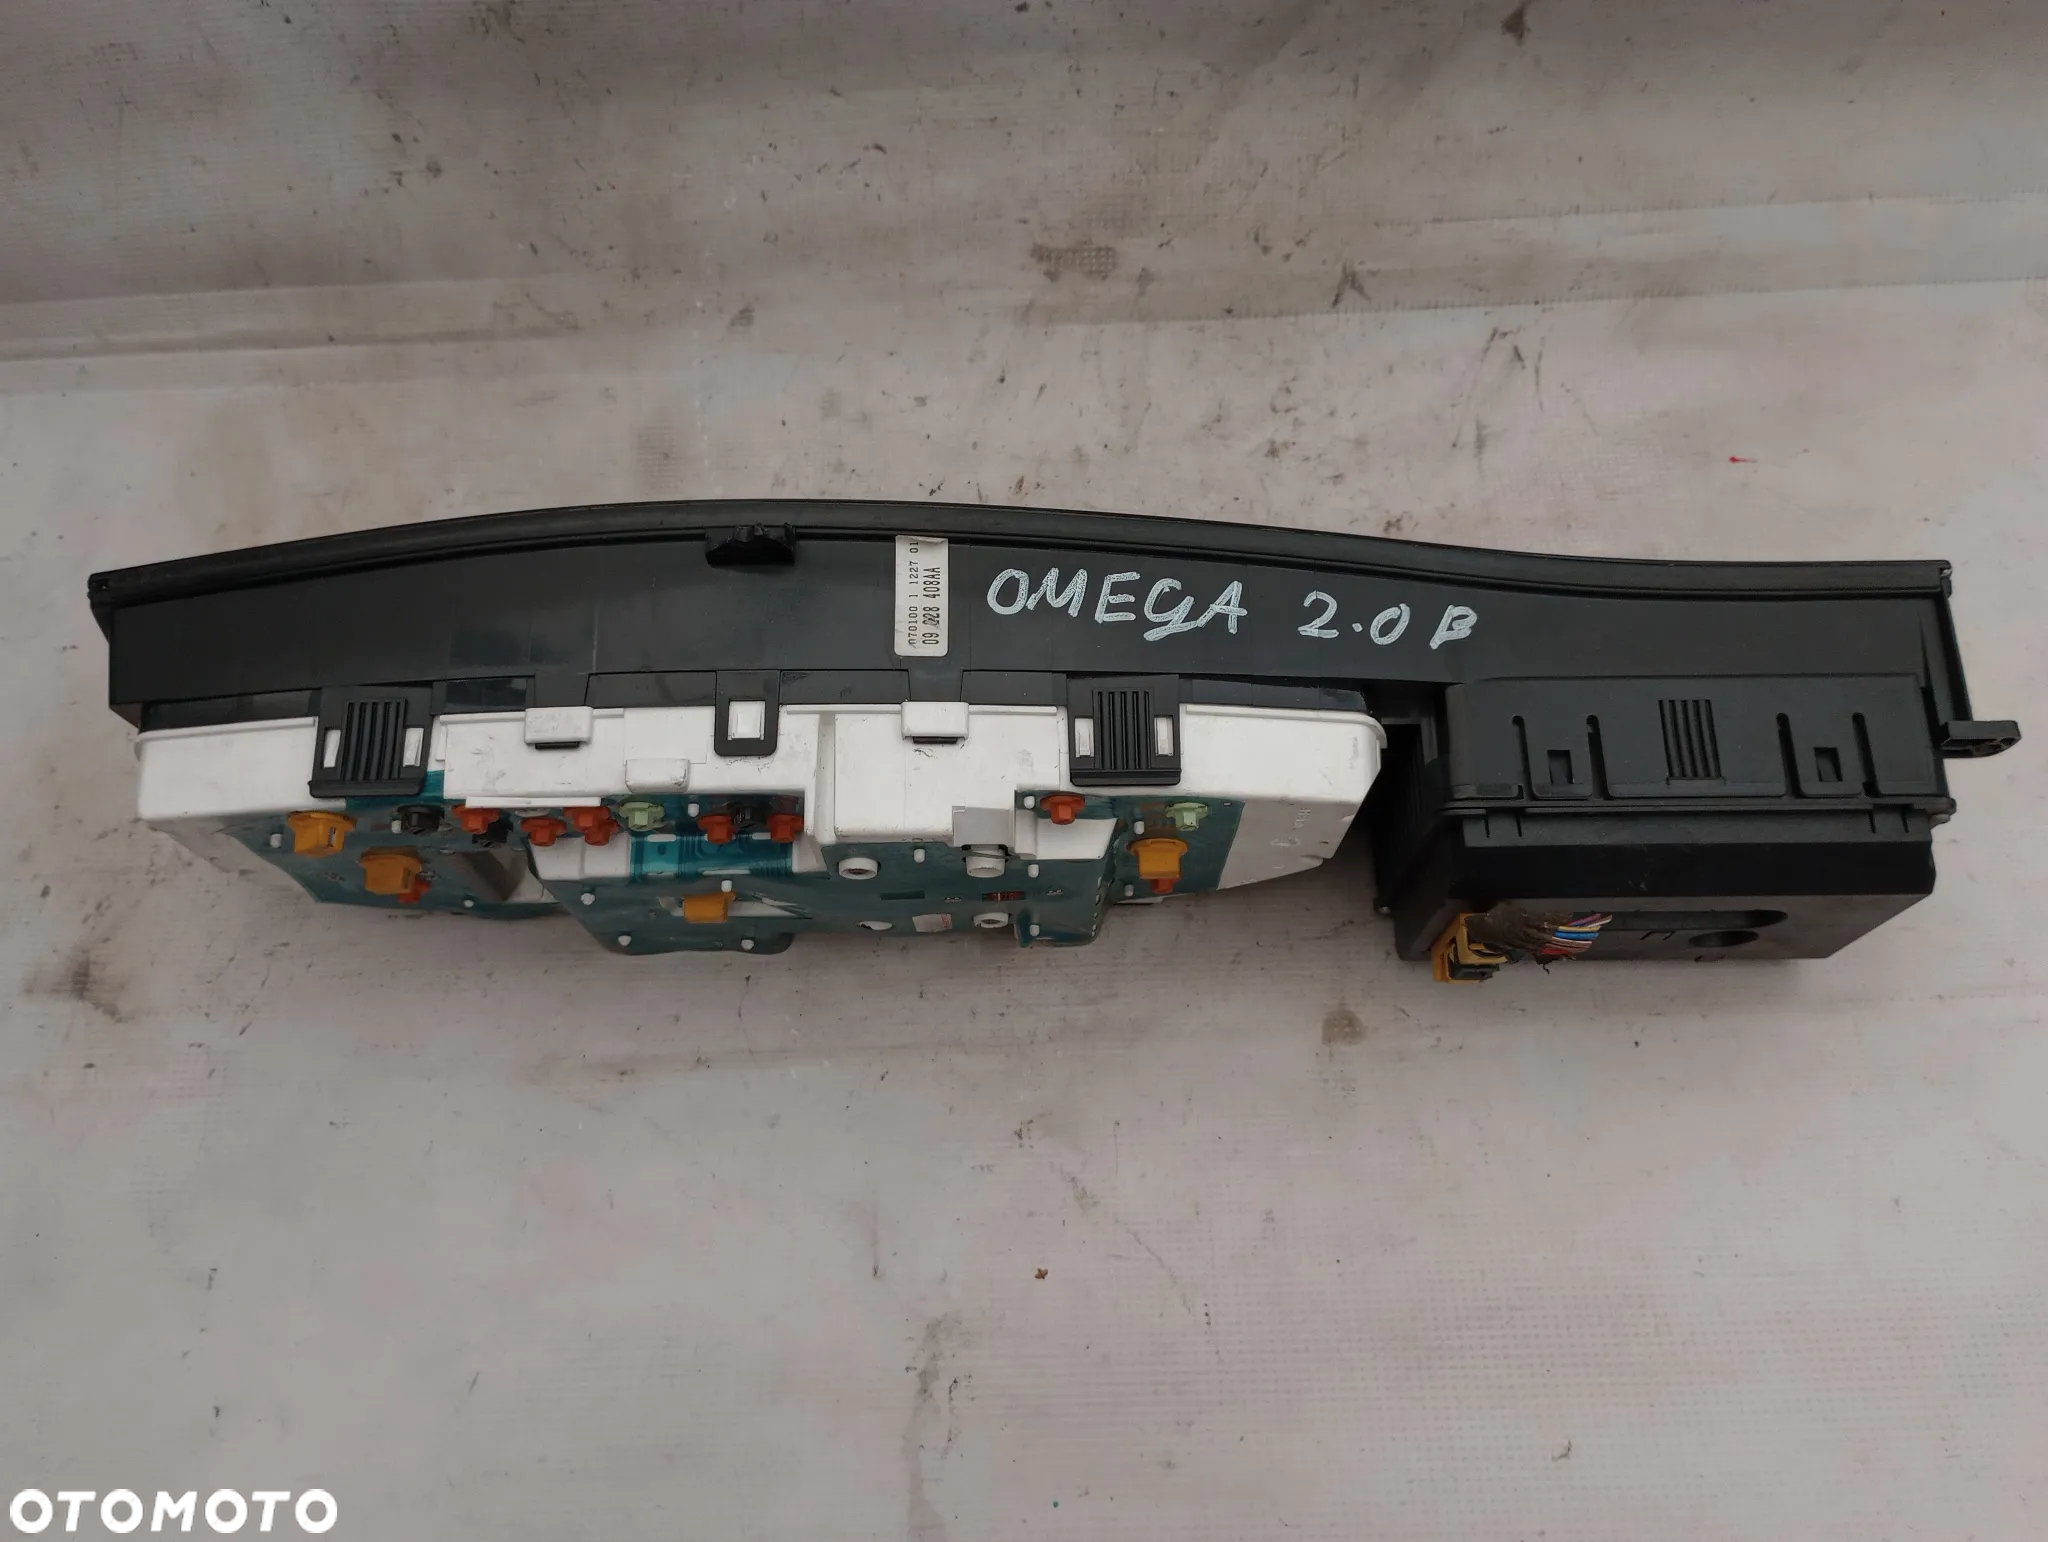 Opel Omega 2.0 B Licznik 09228408AA - 7